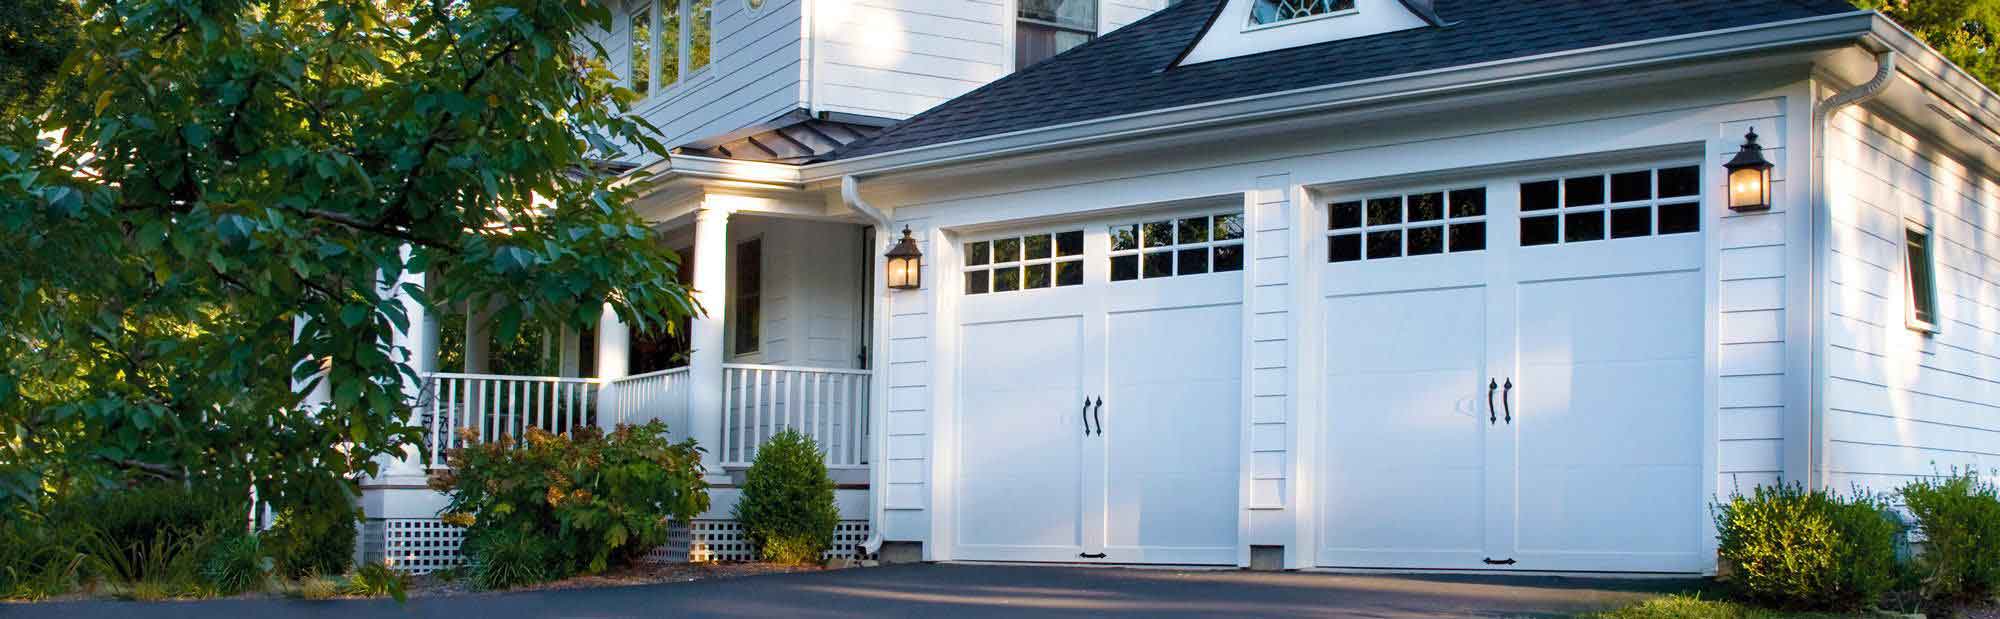 Garage Door Repair And Replacement | Whitby Garage Doors